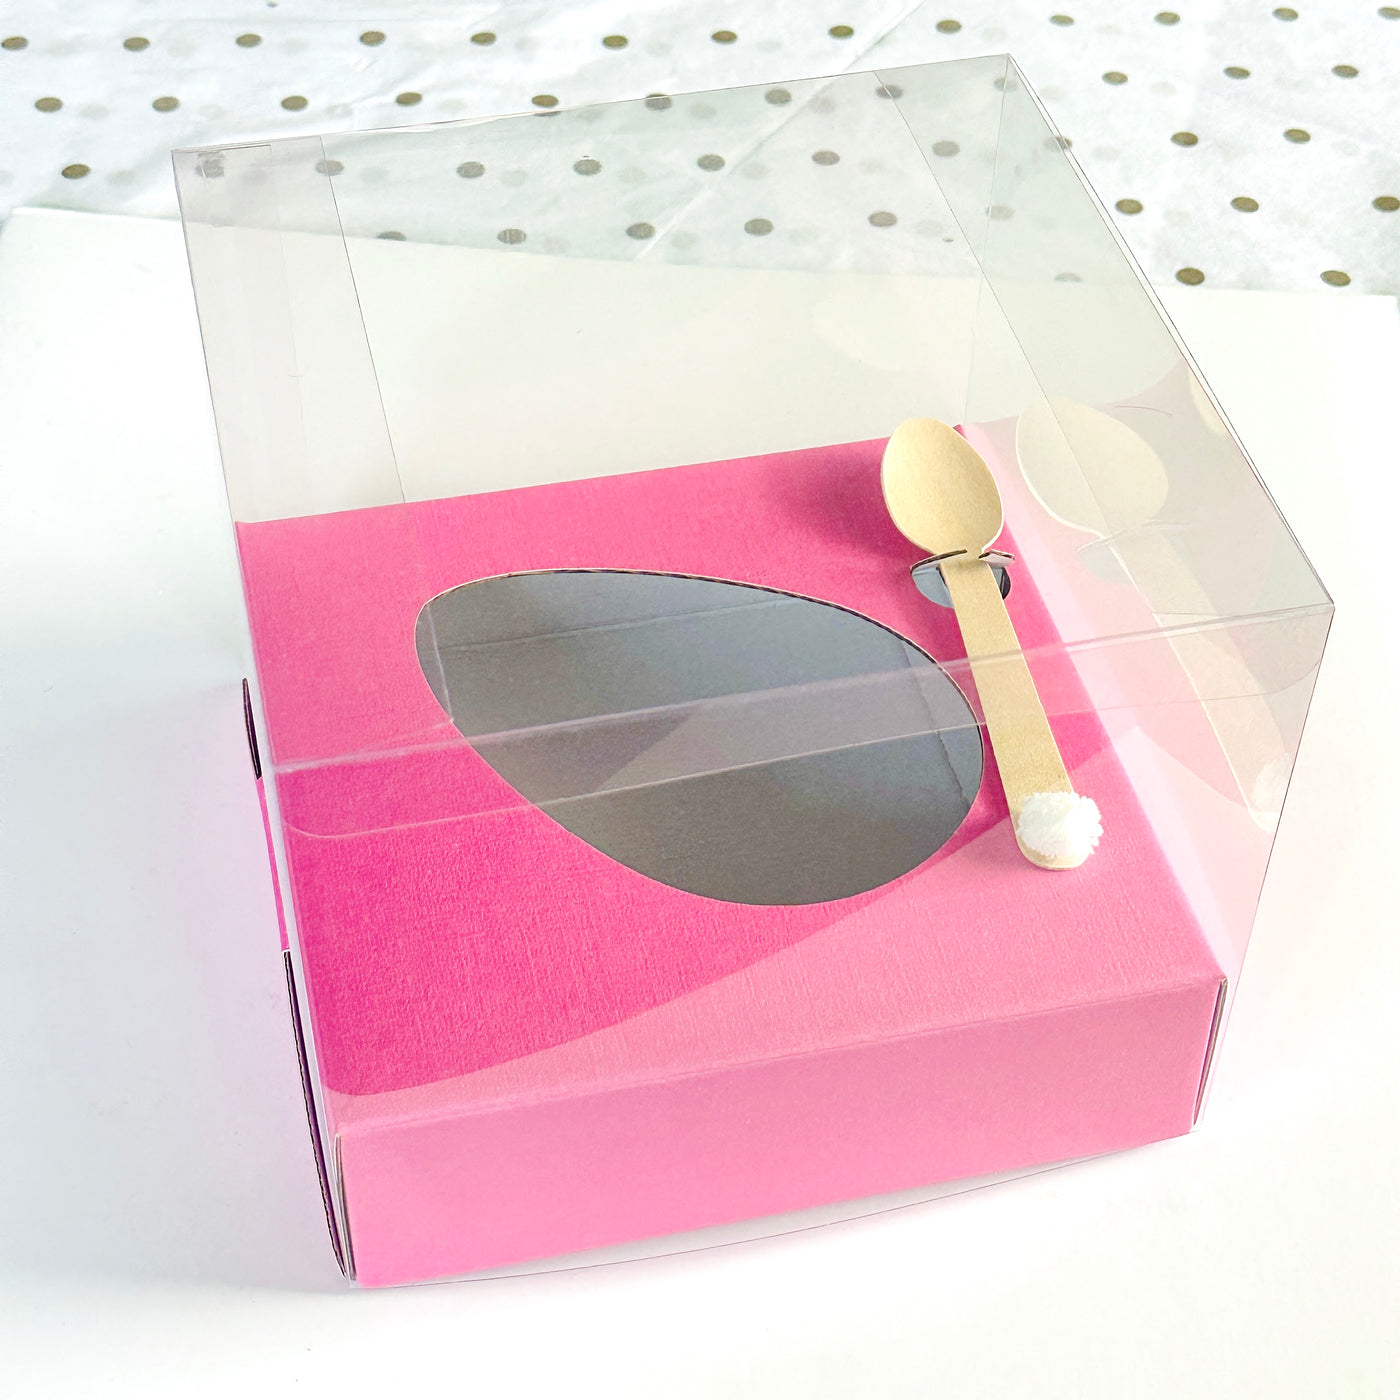 Κουτάκι για μισό σοκολατένιο αυγό με διάφανο καπάκι και βάση ροζ 18 x 18 x 15 εκ.